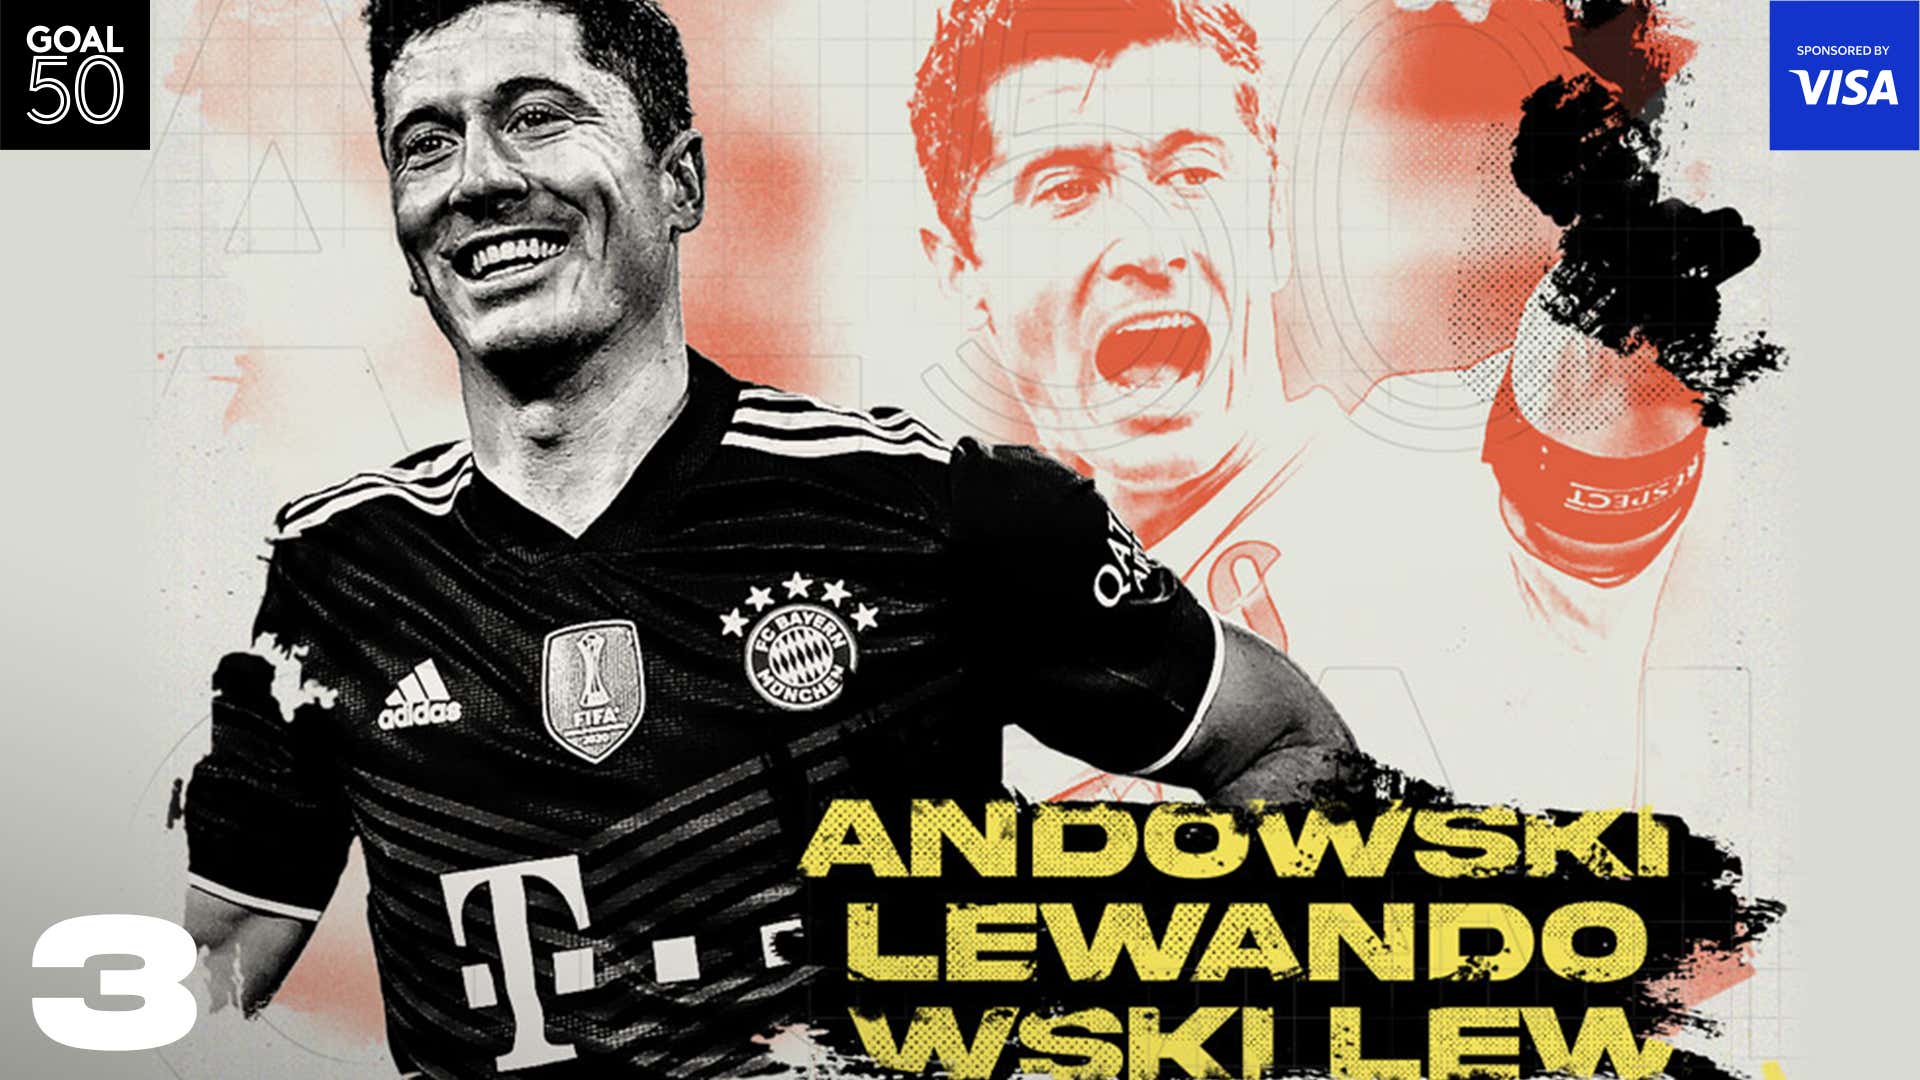 Lewandowski Goal50 2021